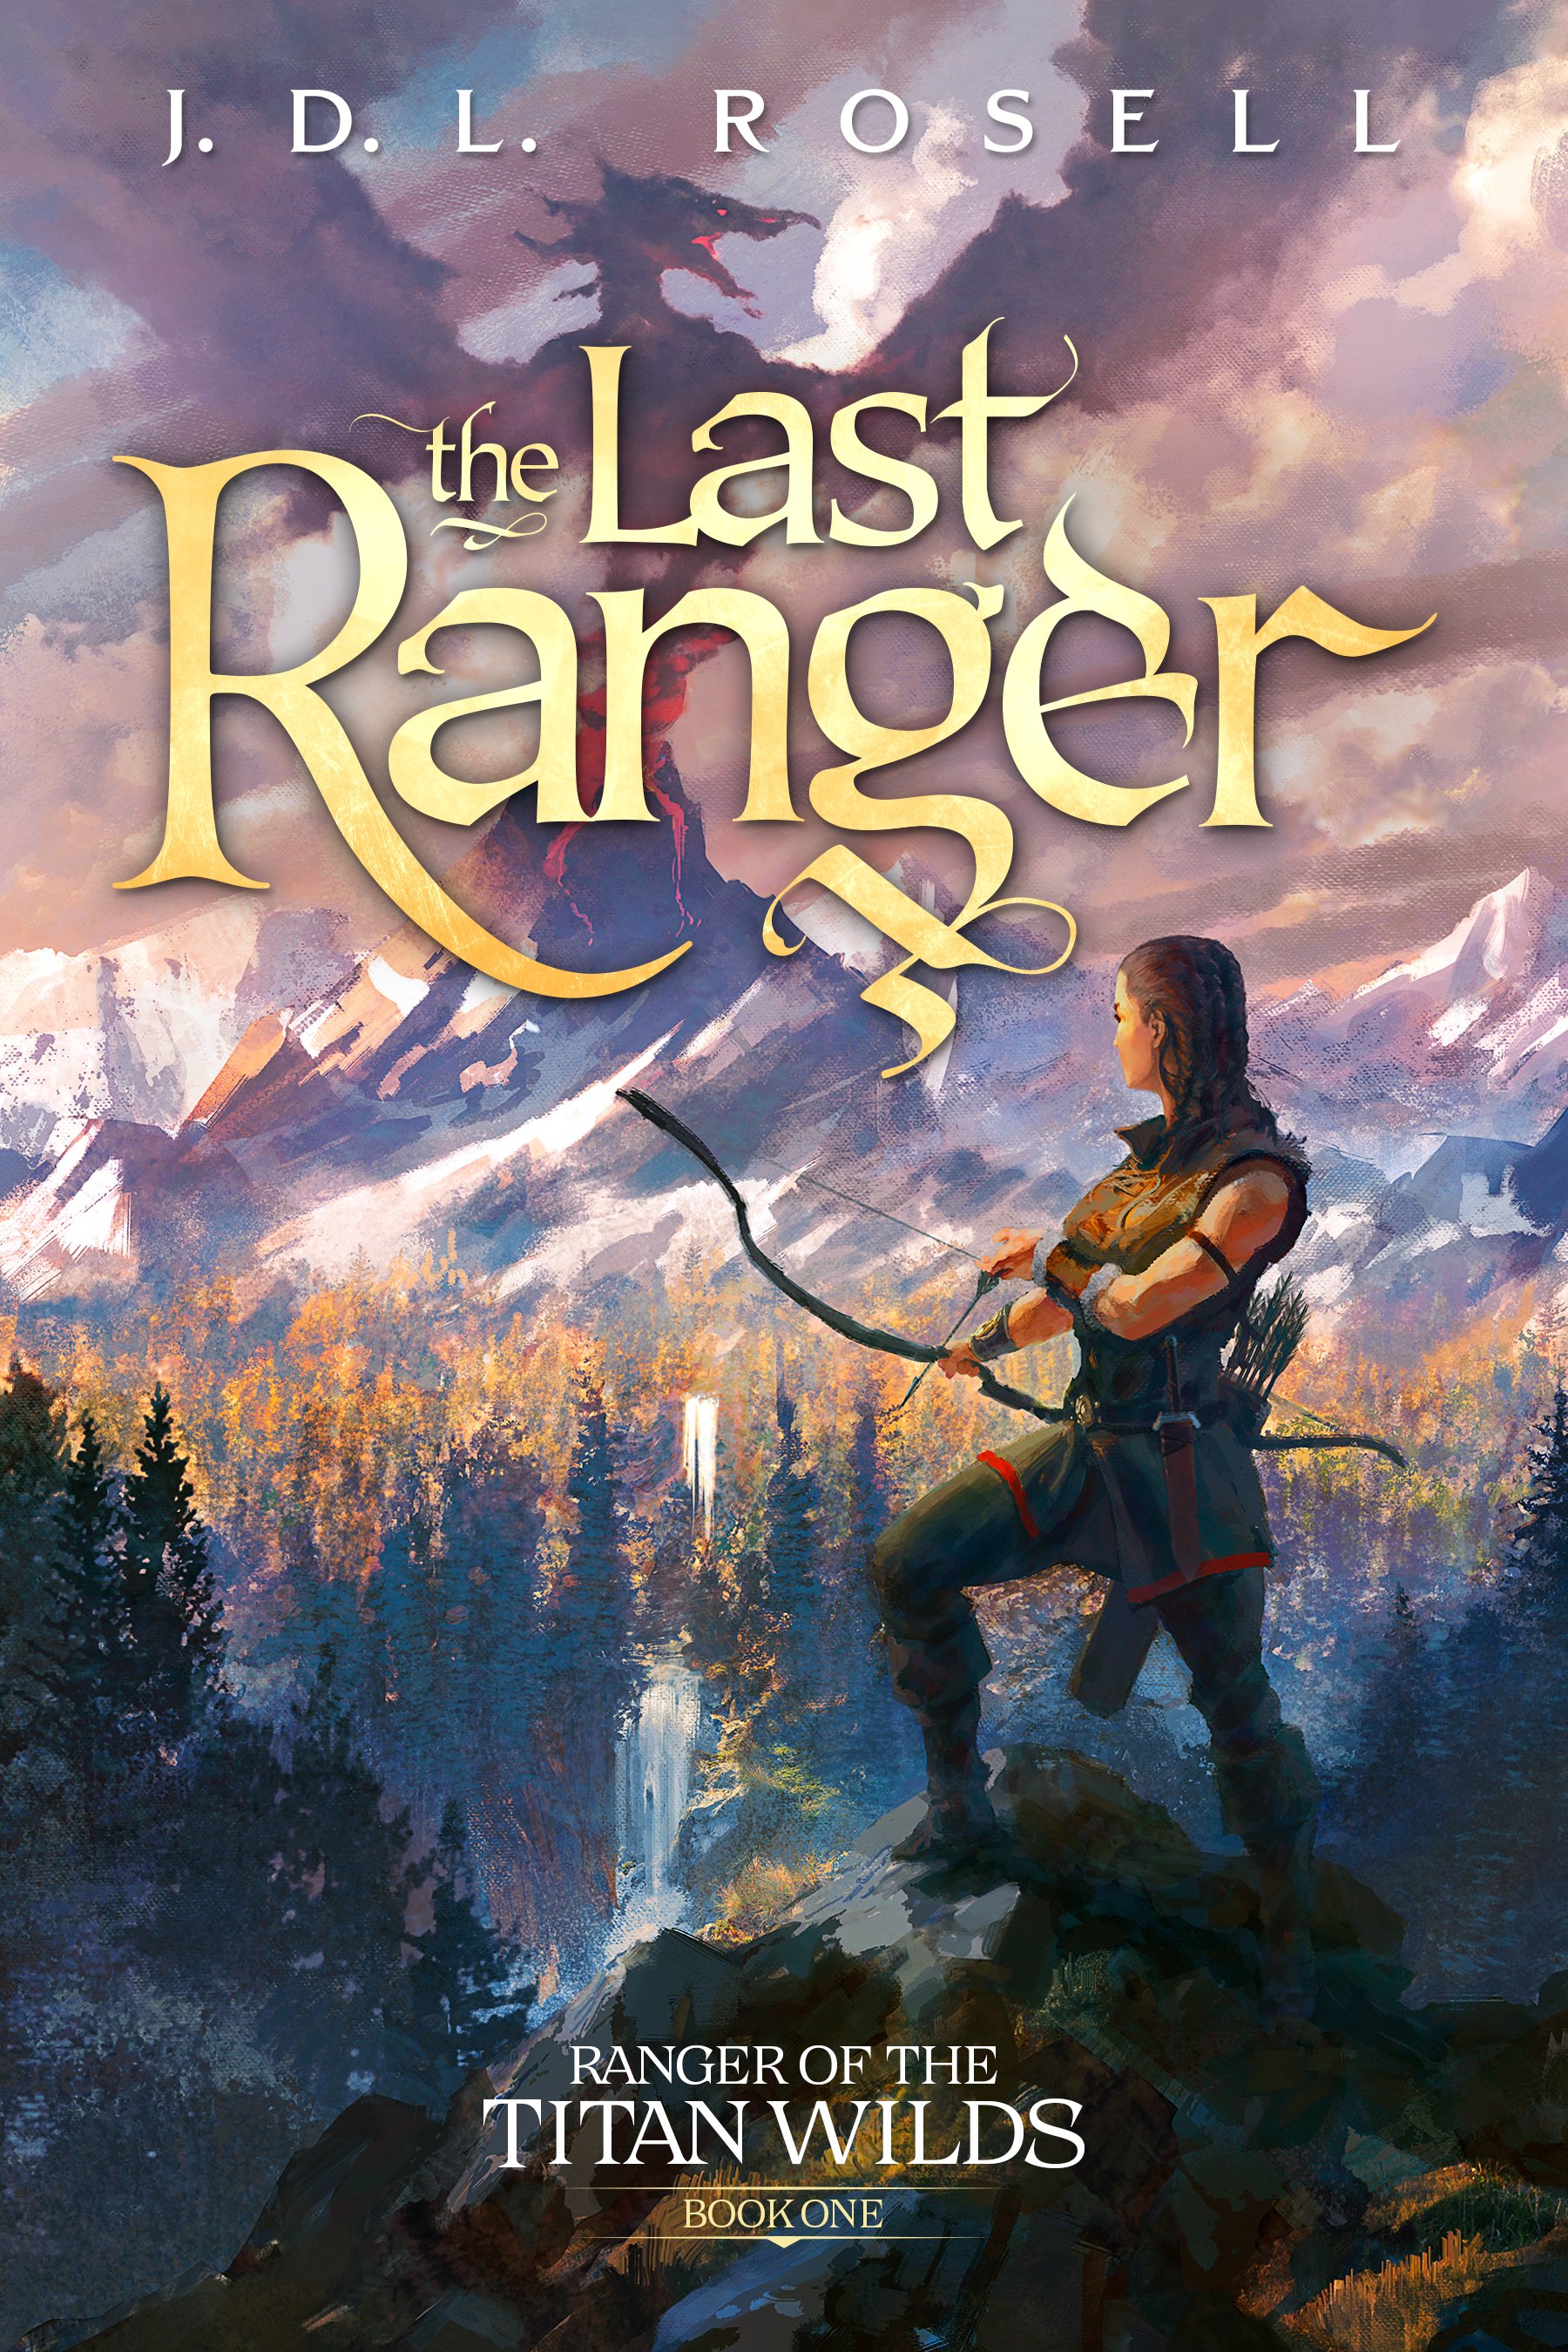 Cover - The Last Ranger.jpg